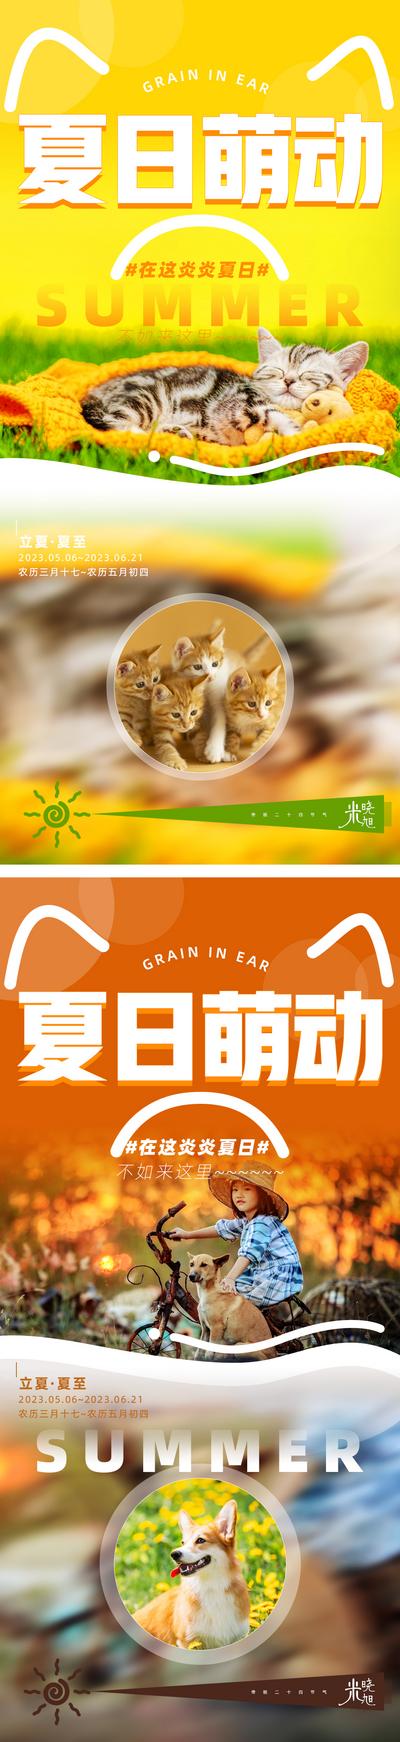 南门网 广告 海报 系列 动物 猫 狗 夏季